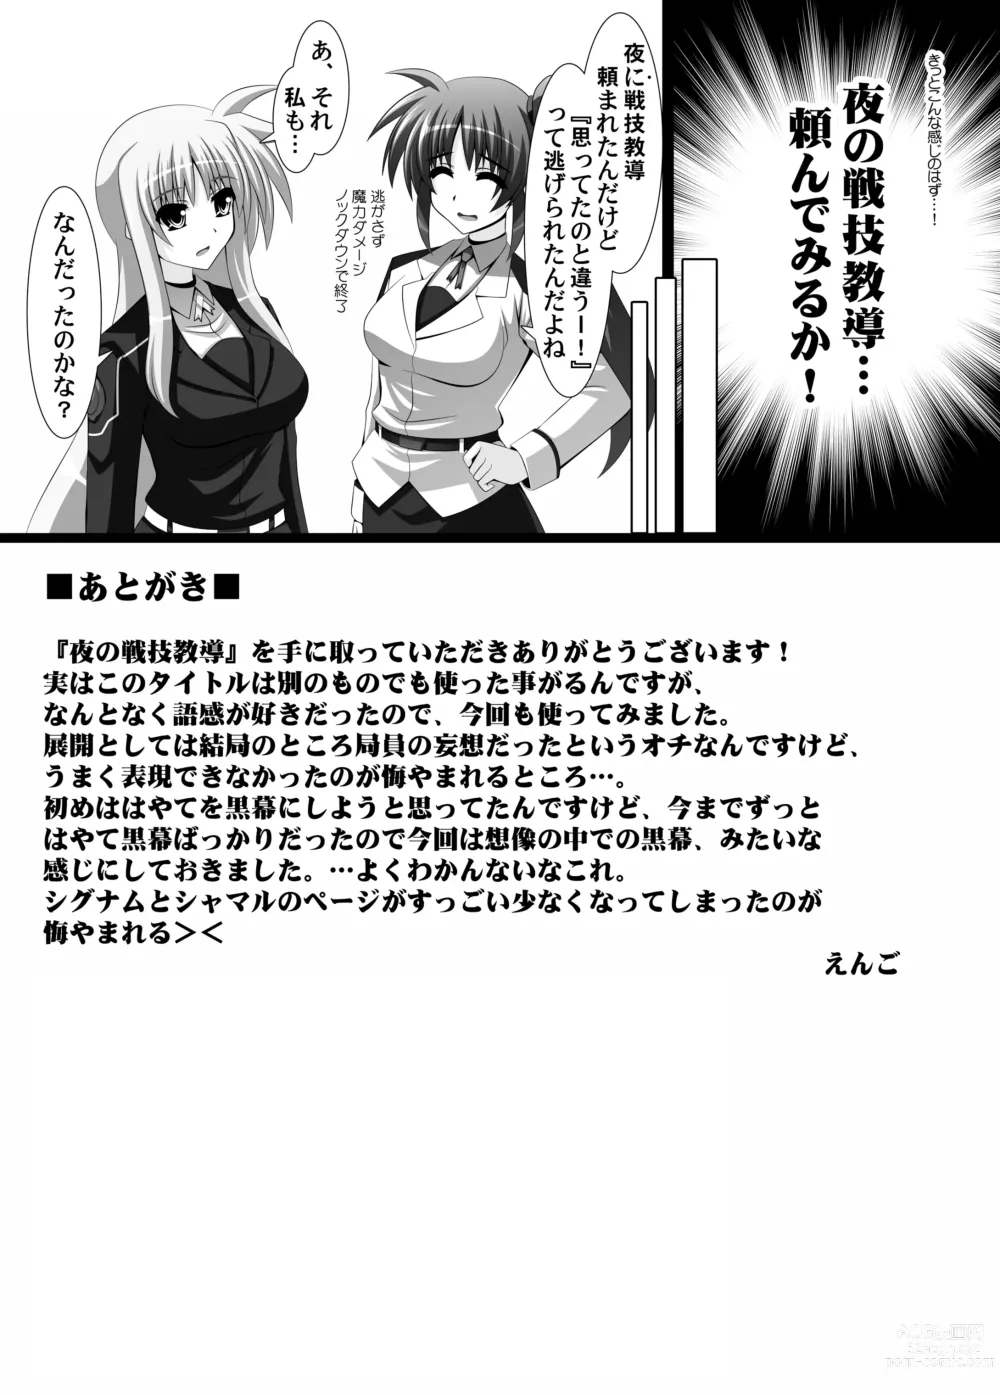 Page 21 of doujinshi Yoru no Sengi Kyoudou